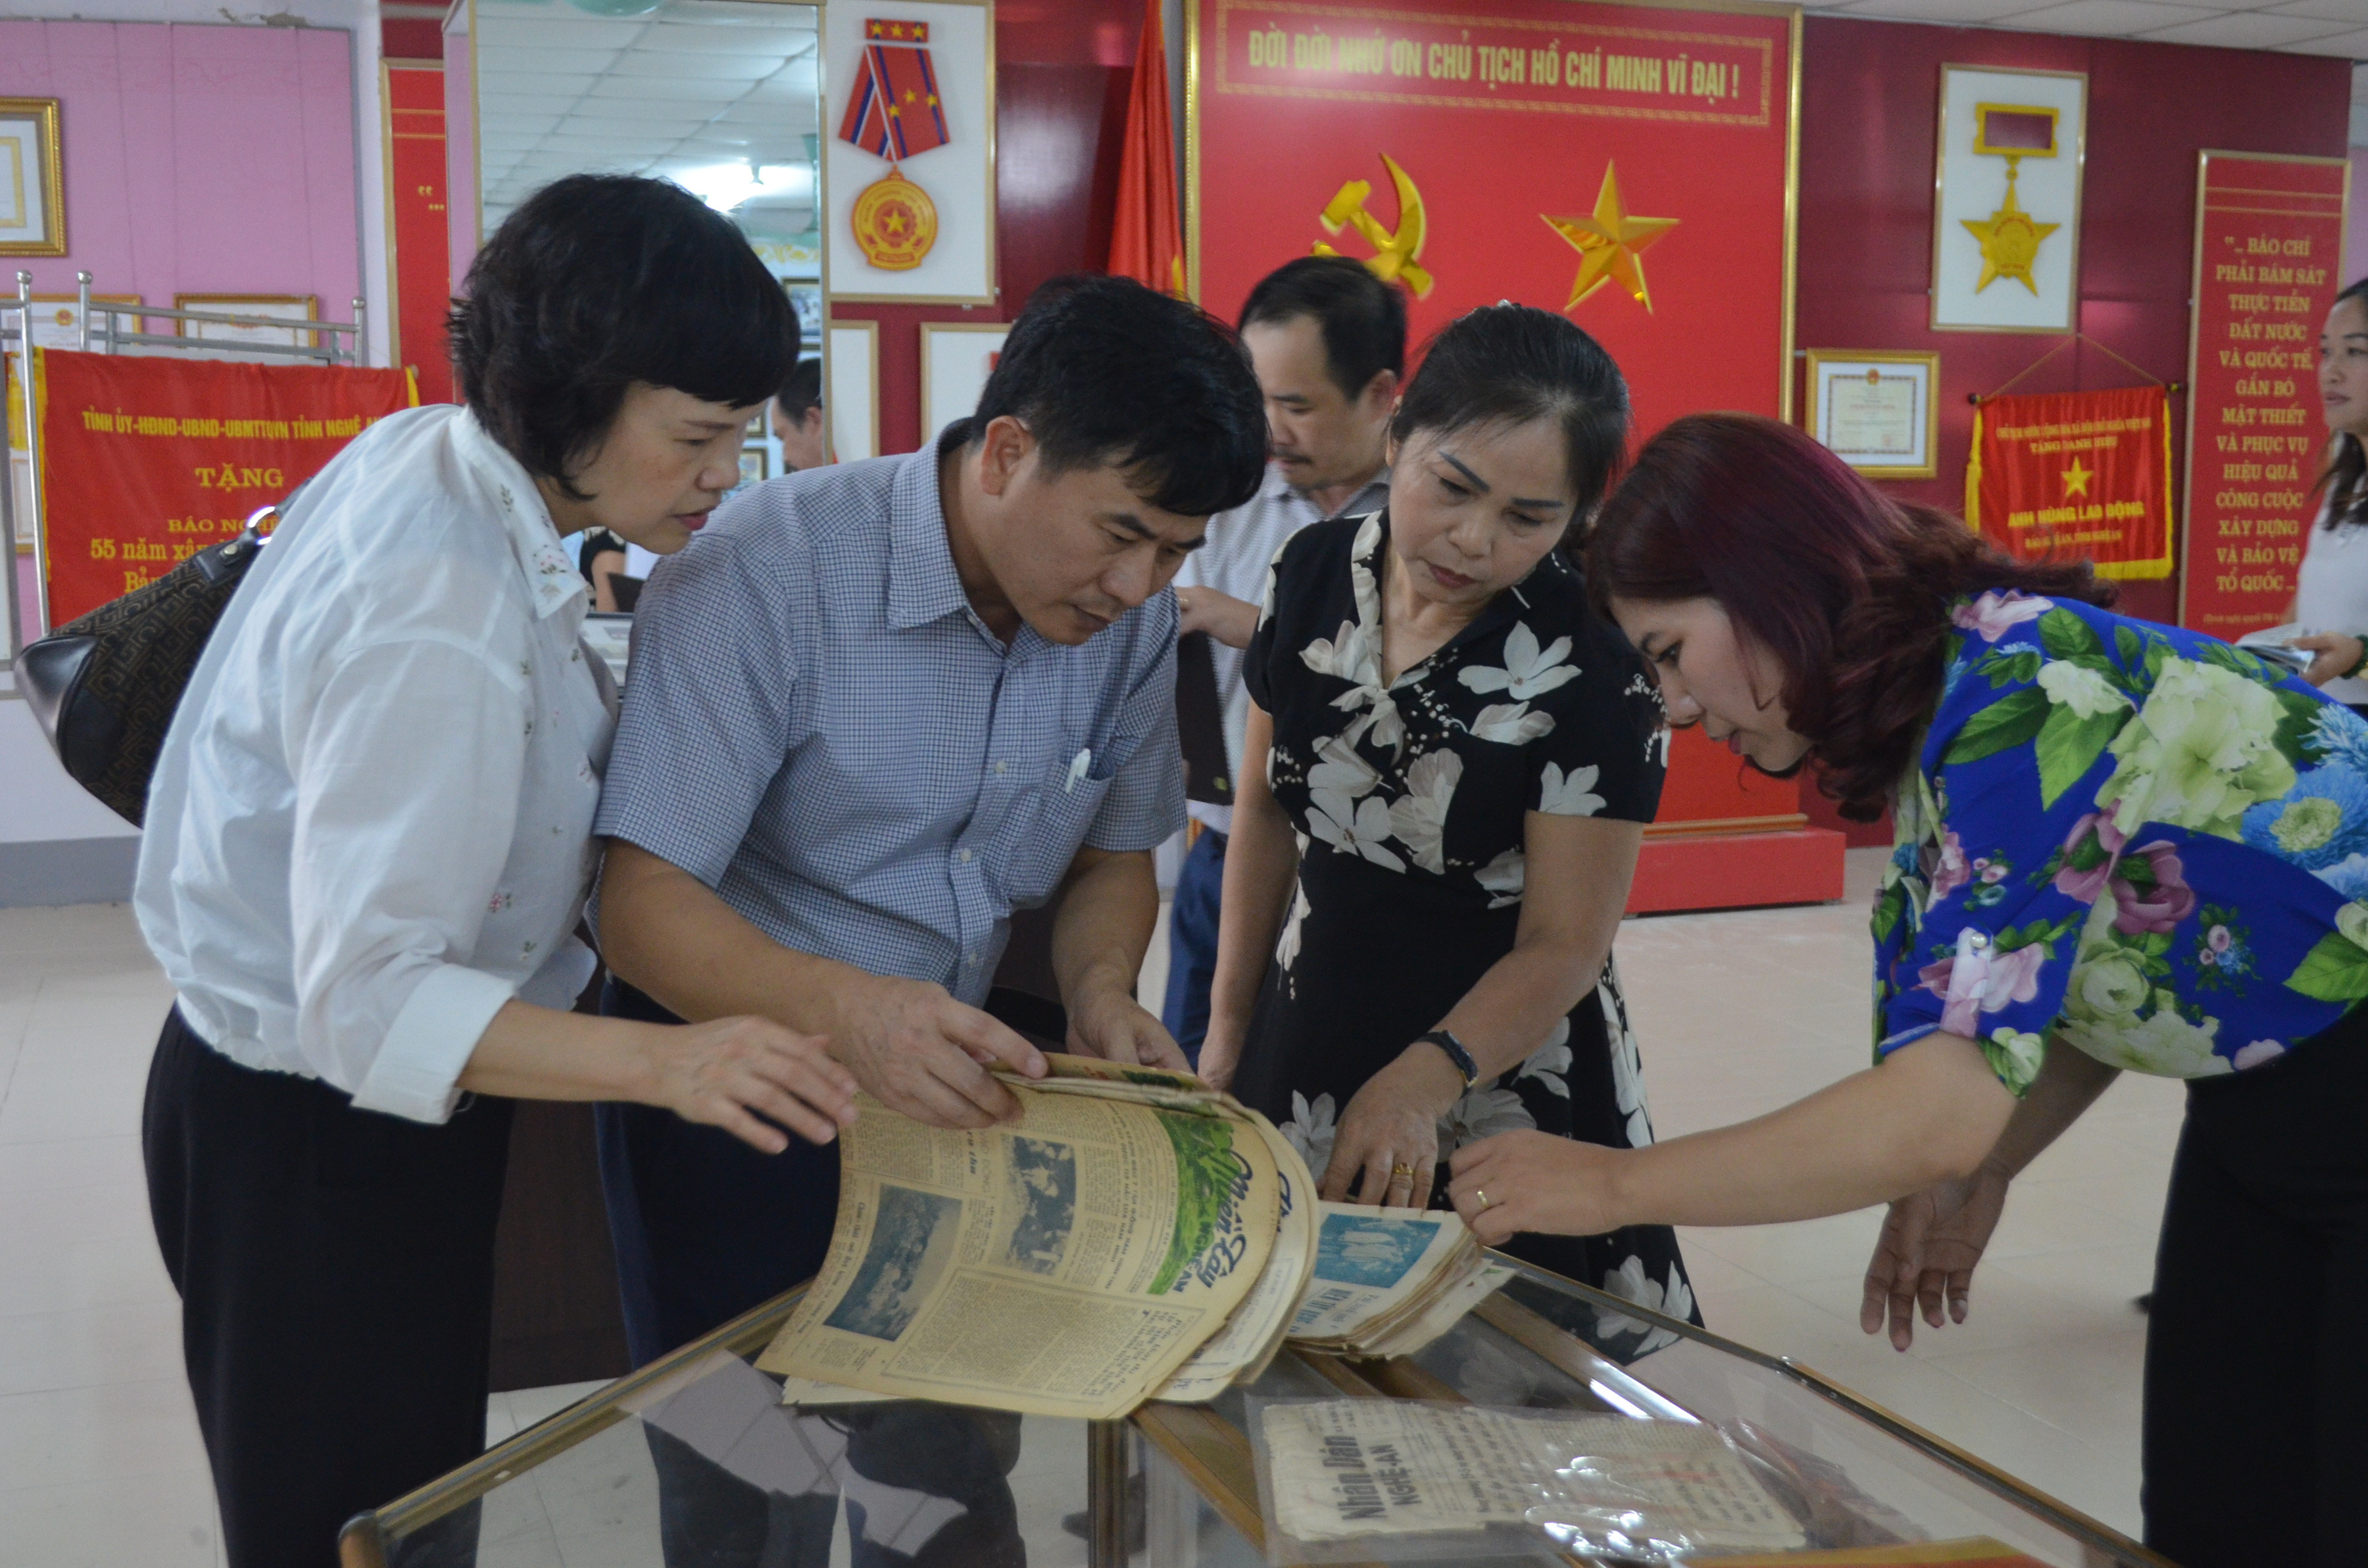 Bảo tàng Báo chí Cácnh mạng Việt Nam tham khảo các hiện vật báo chí Nghệ An những số đầu tiên hiện còn được lưu giữ tại Phòng truyền thống Báo Nghệ An